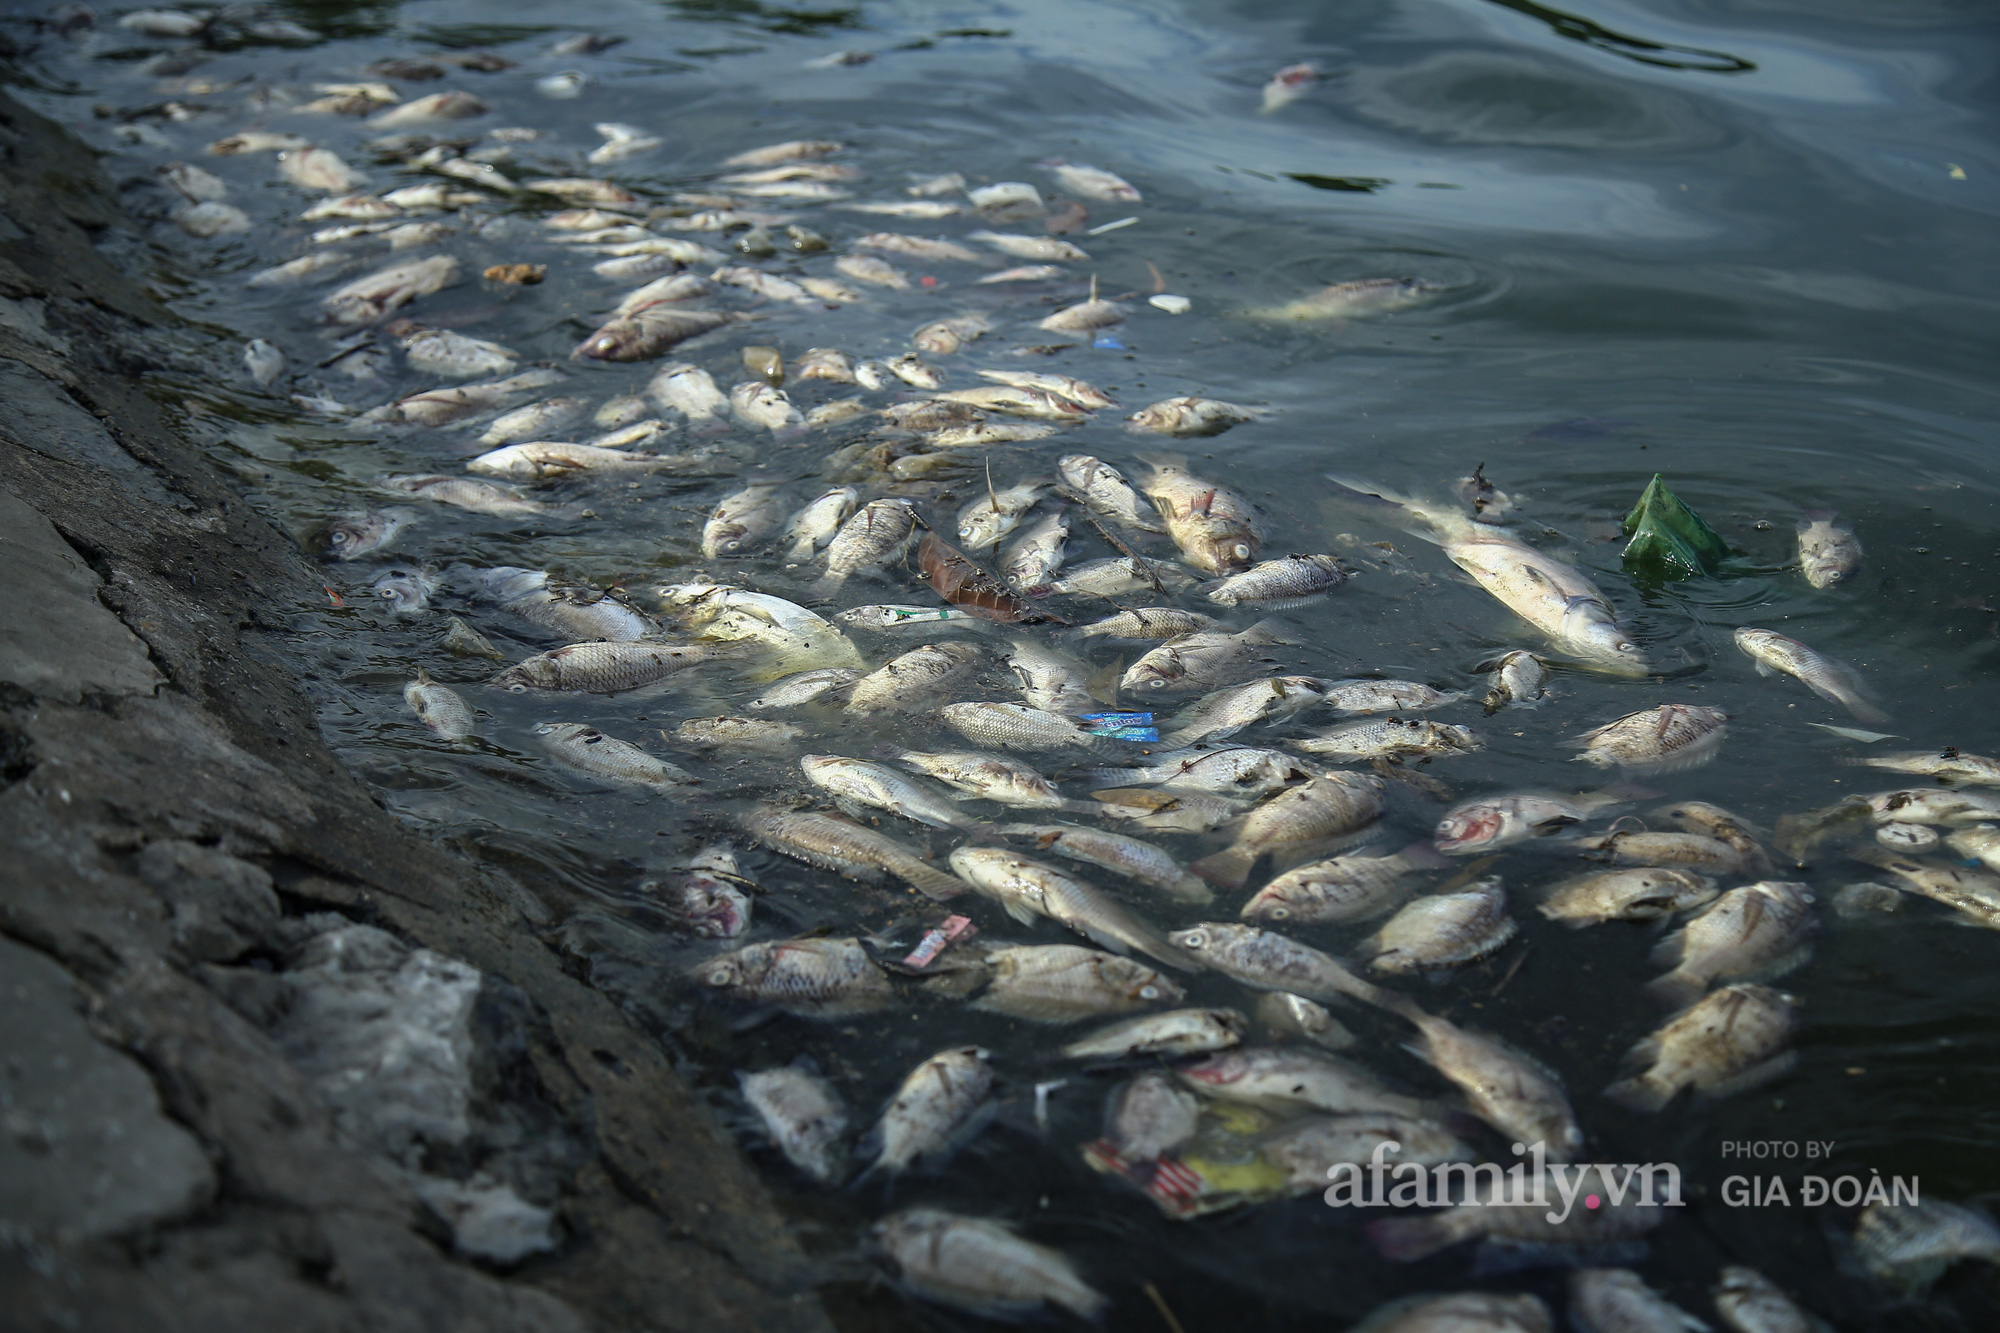 Cá chết nổi trắng góc hồ Yên Sở, người dân ngao ngán mỗi khi đi qua - Ảnh 9.